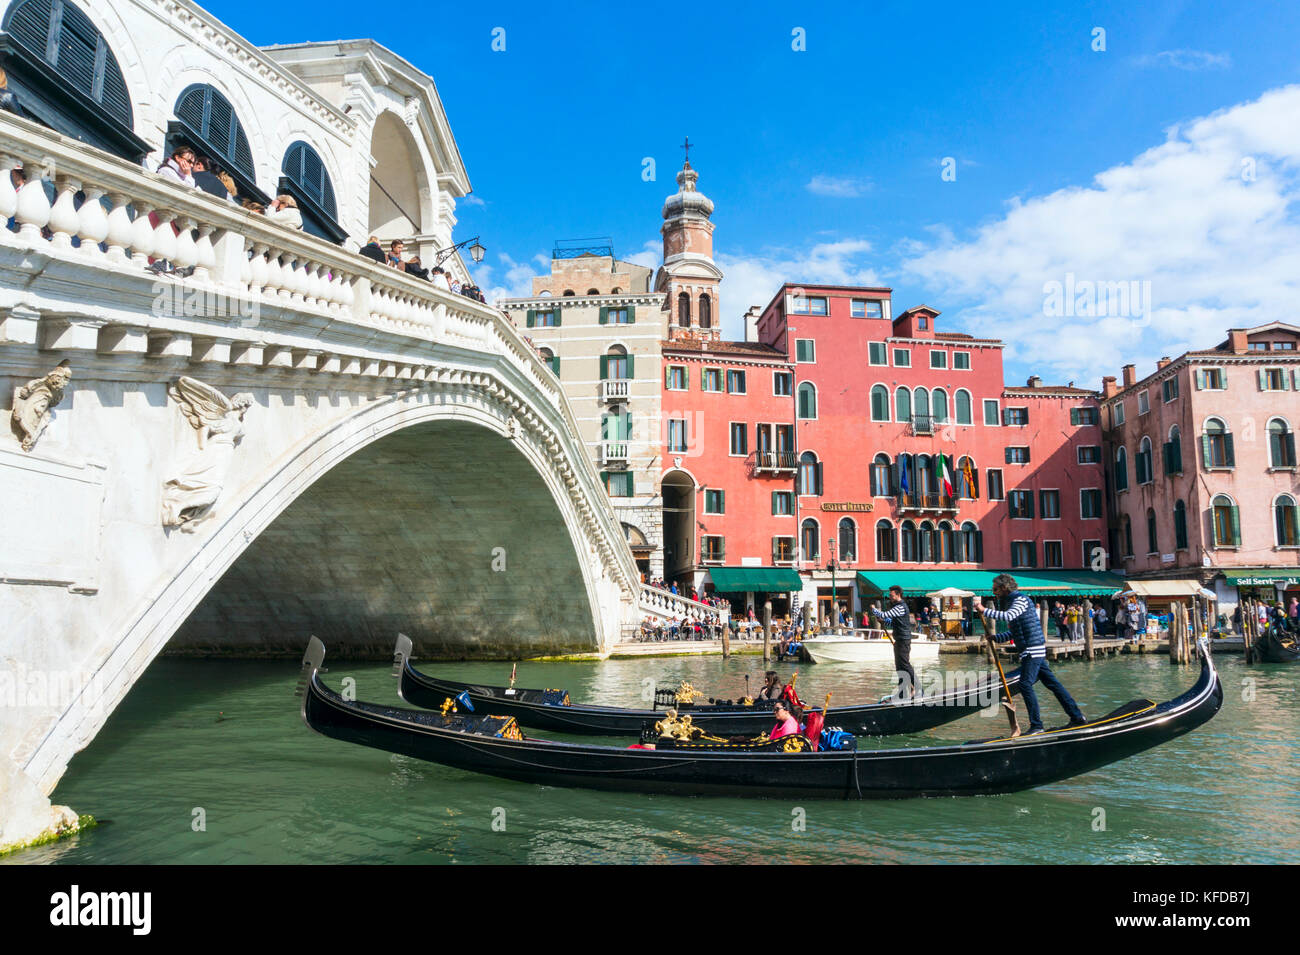 Venecia Italia Venecia gondoleros con turistas en góndolas pasando bajo el puente de Rialto en el Gran Canal Venecia Italia ue europa Foto de stock